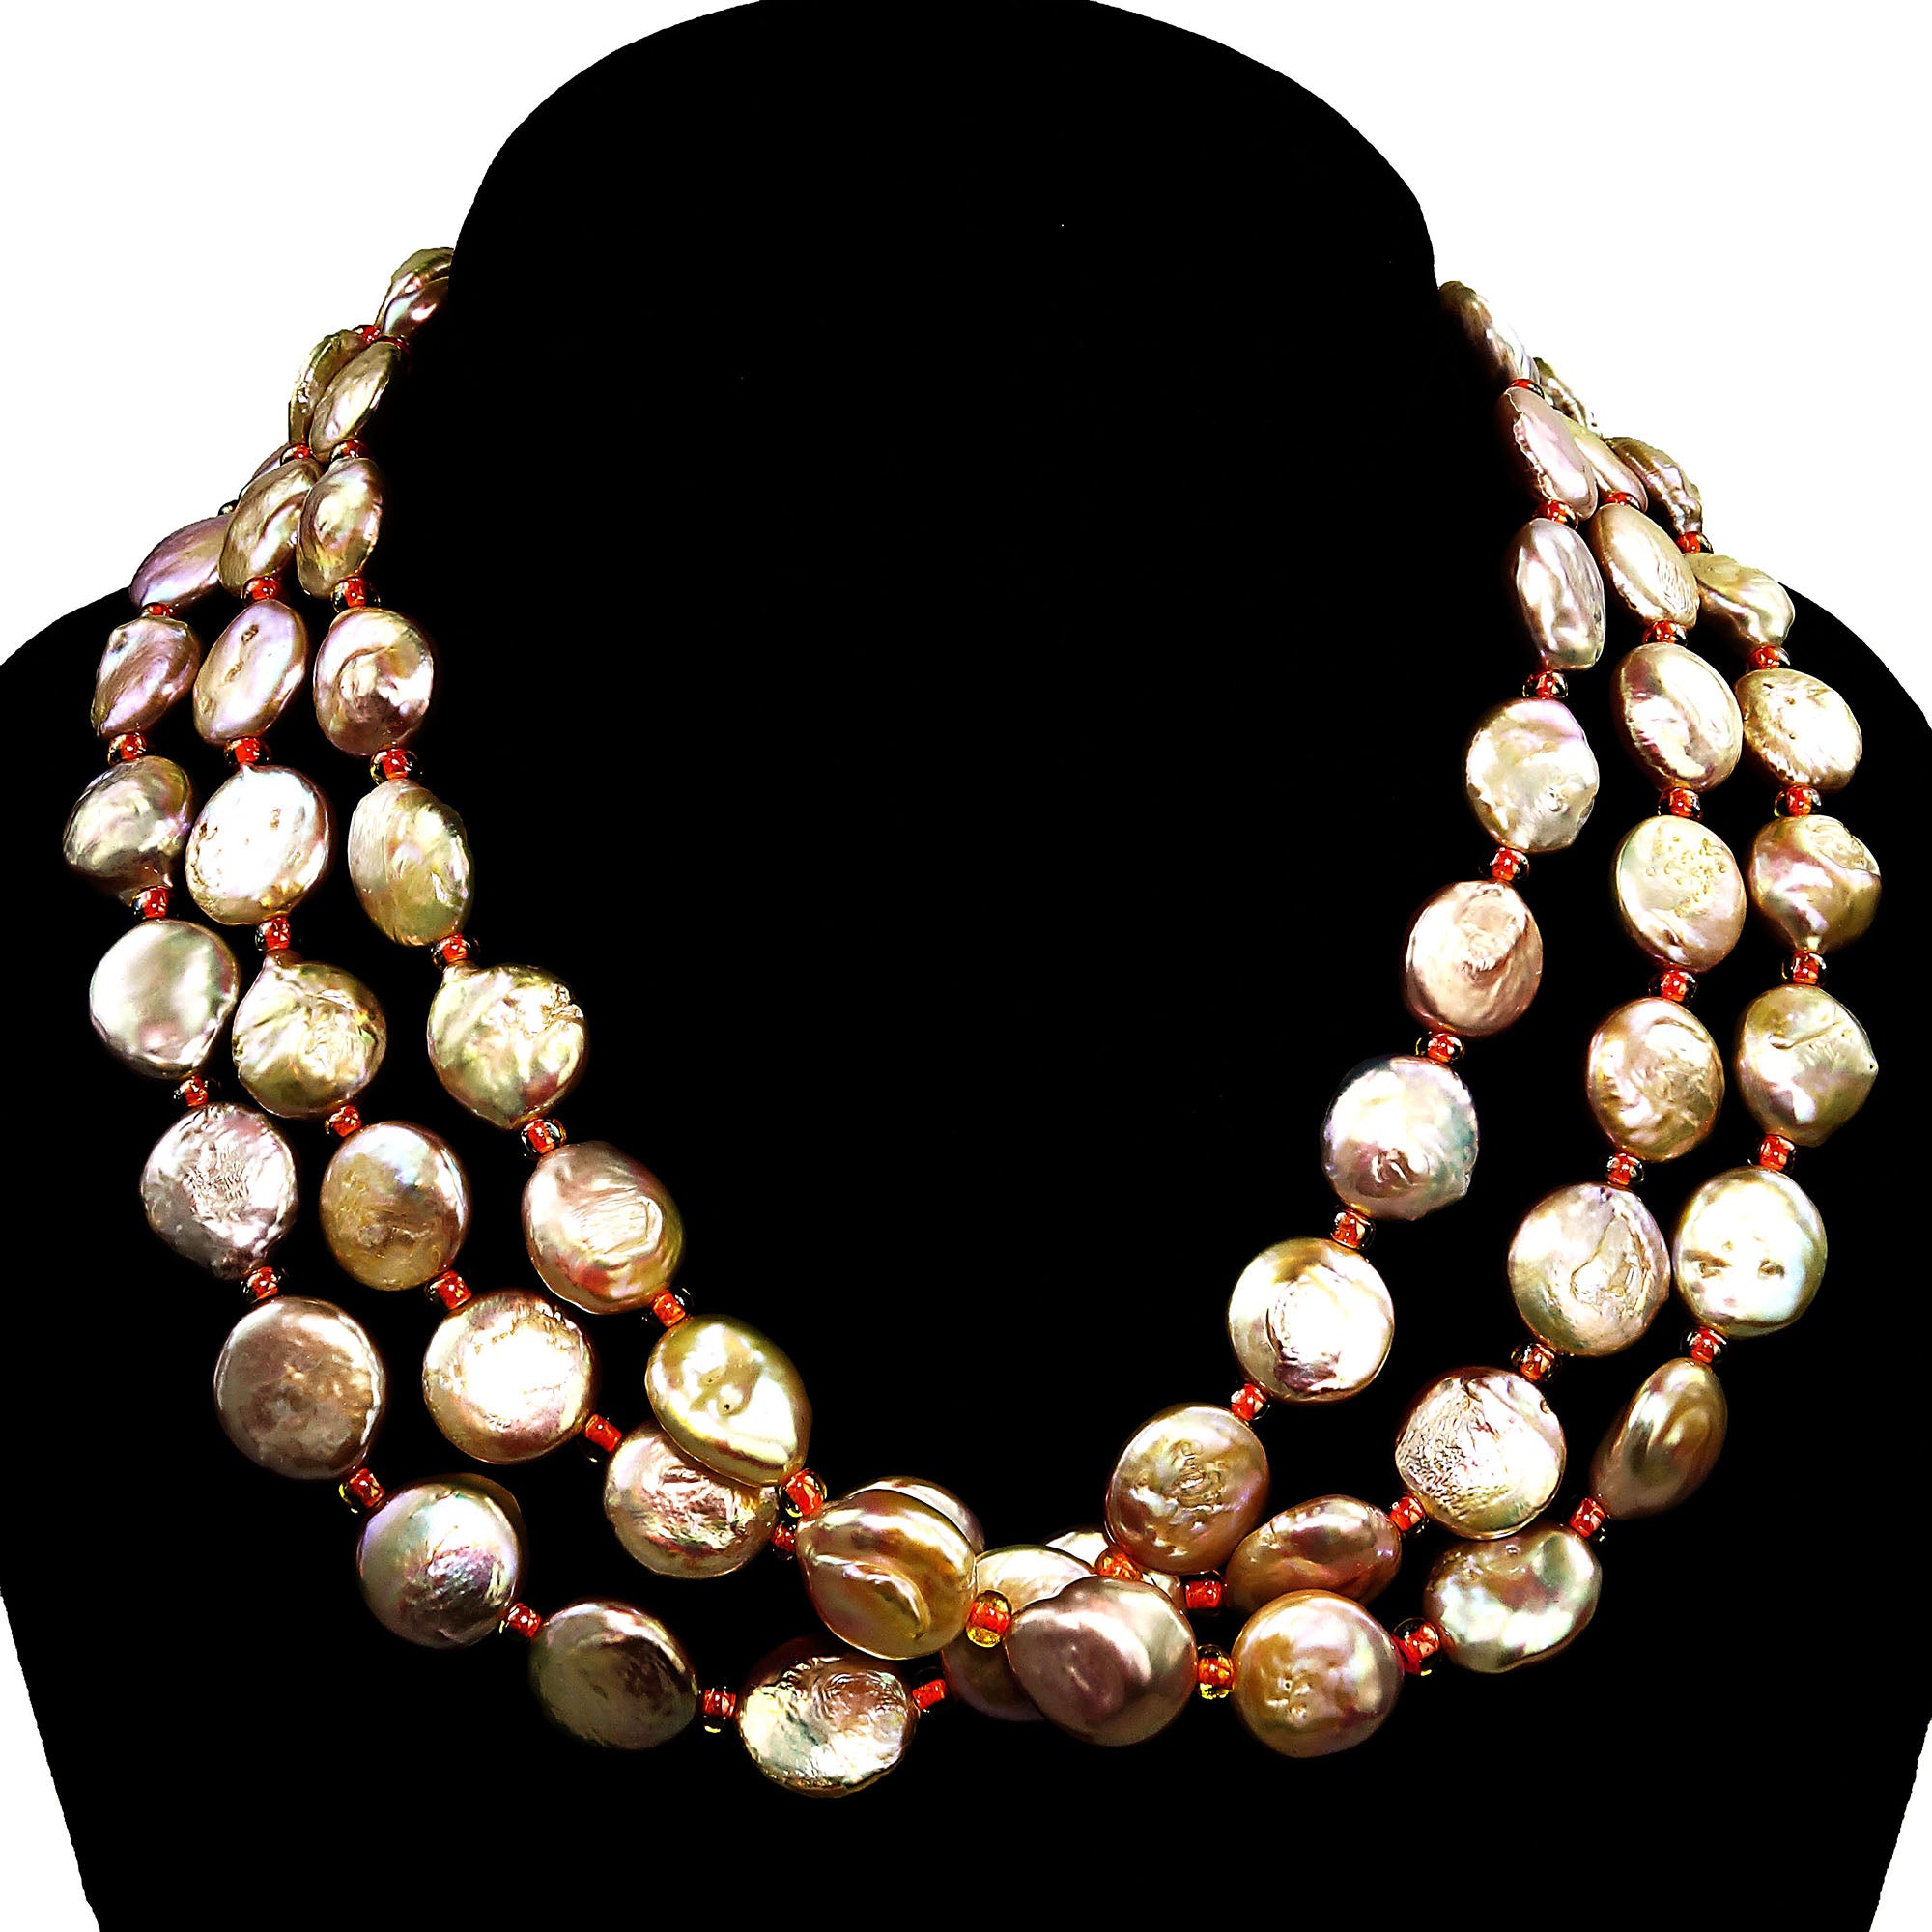 AJD - Collier à trois rangs de perles en forme de pièce de monnaie, couleur pêche/rose (pierre de naissance de juin)  Excellent cadeau en vente